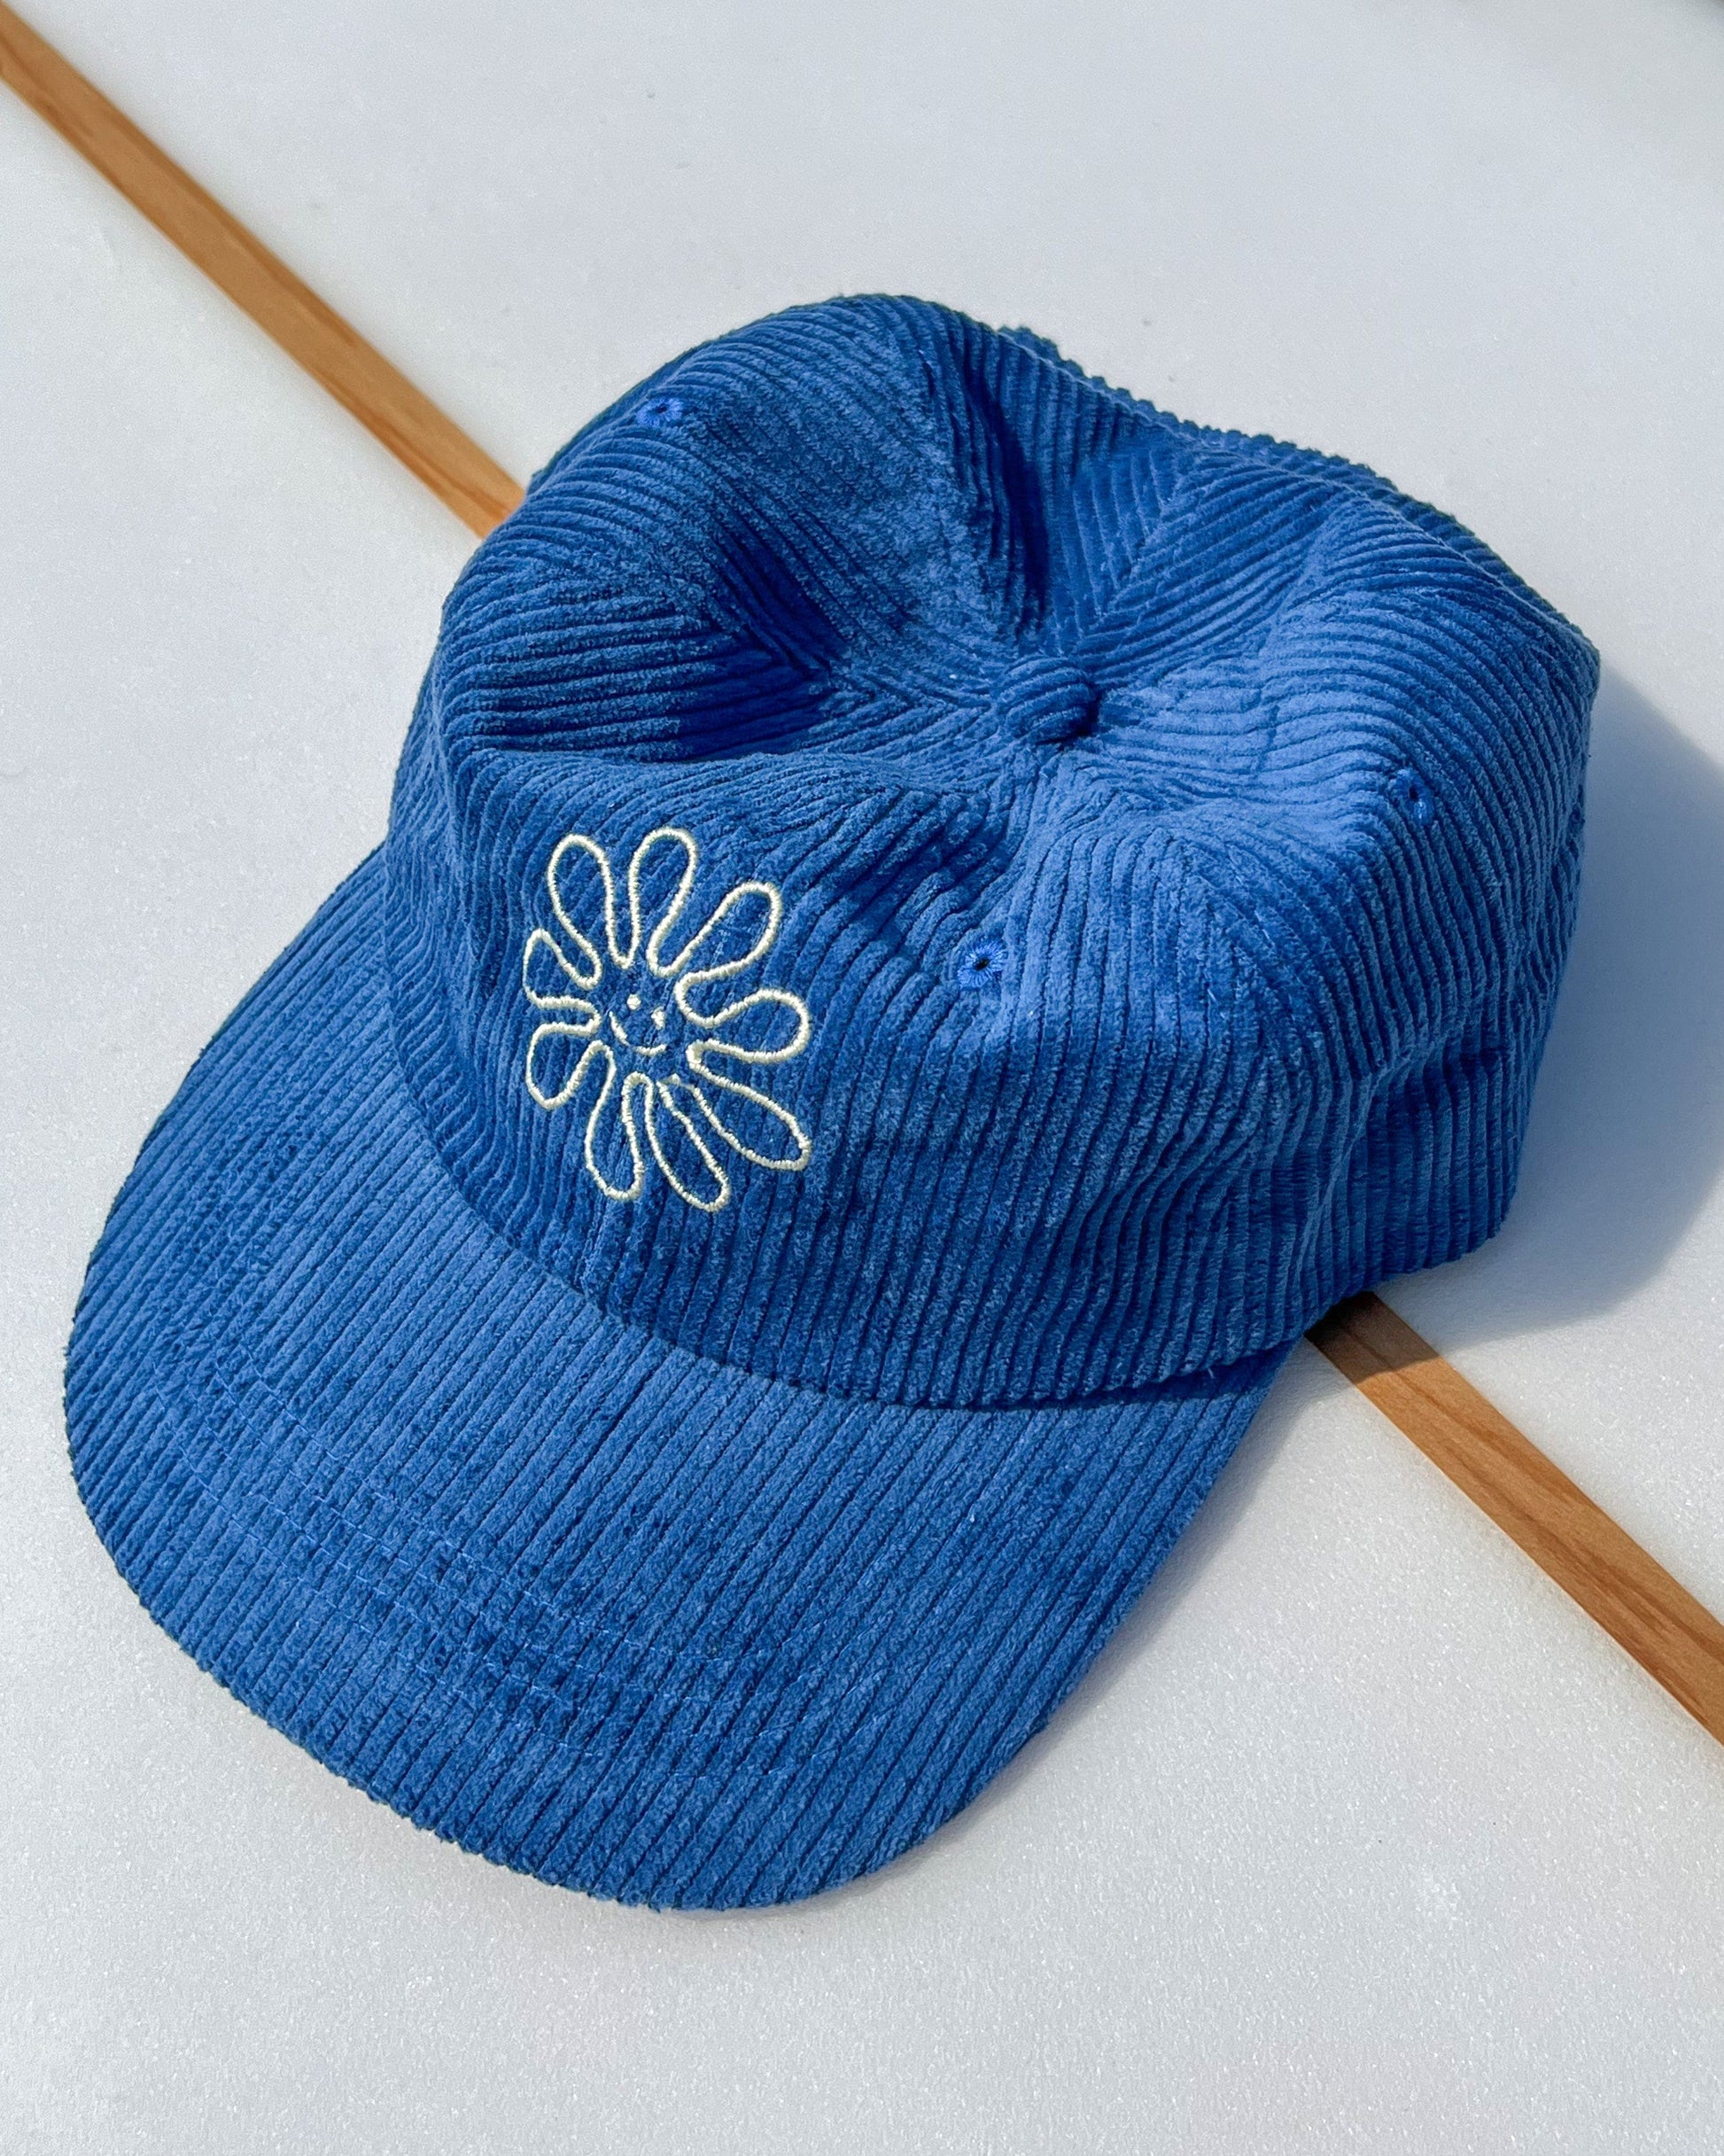 vetements surf salty smile Flower Cord Cap Bleu marque eco responsable coton bio